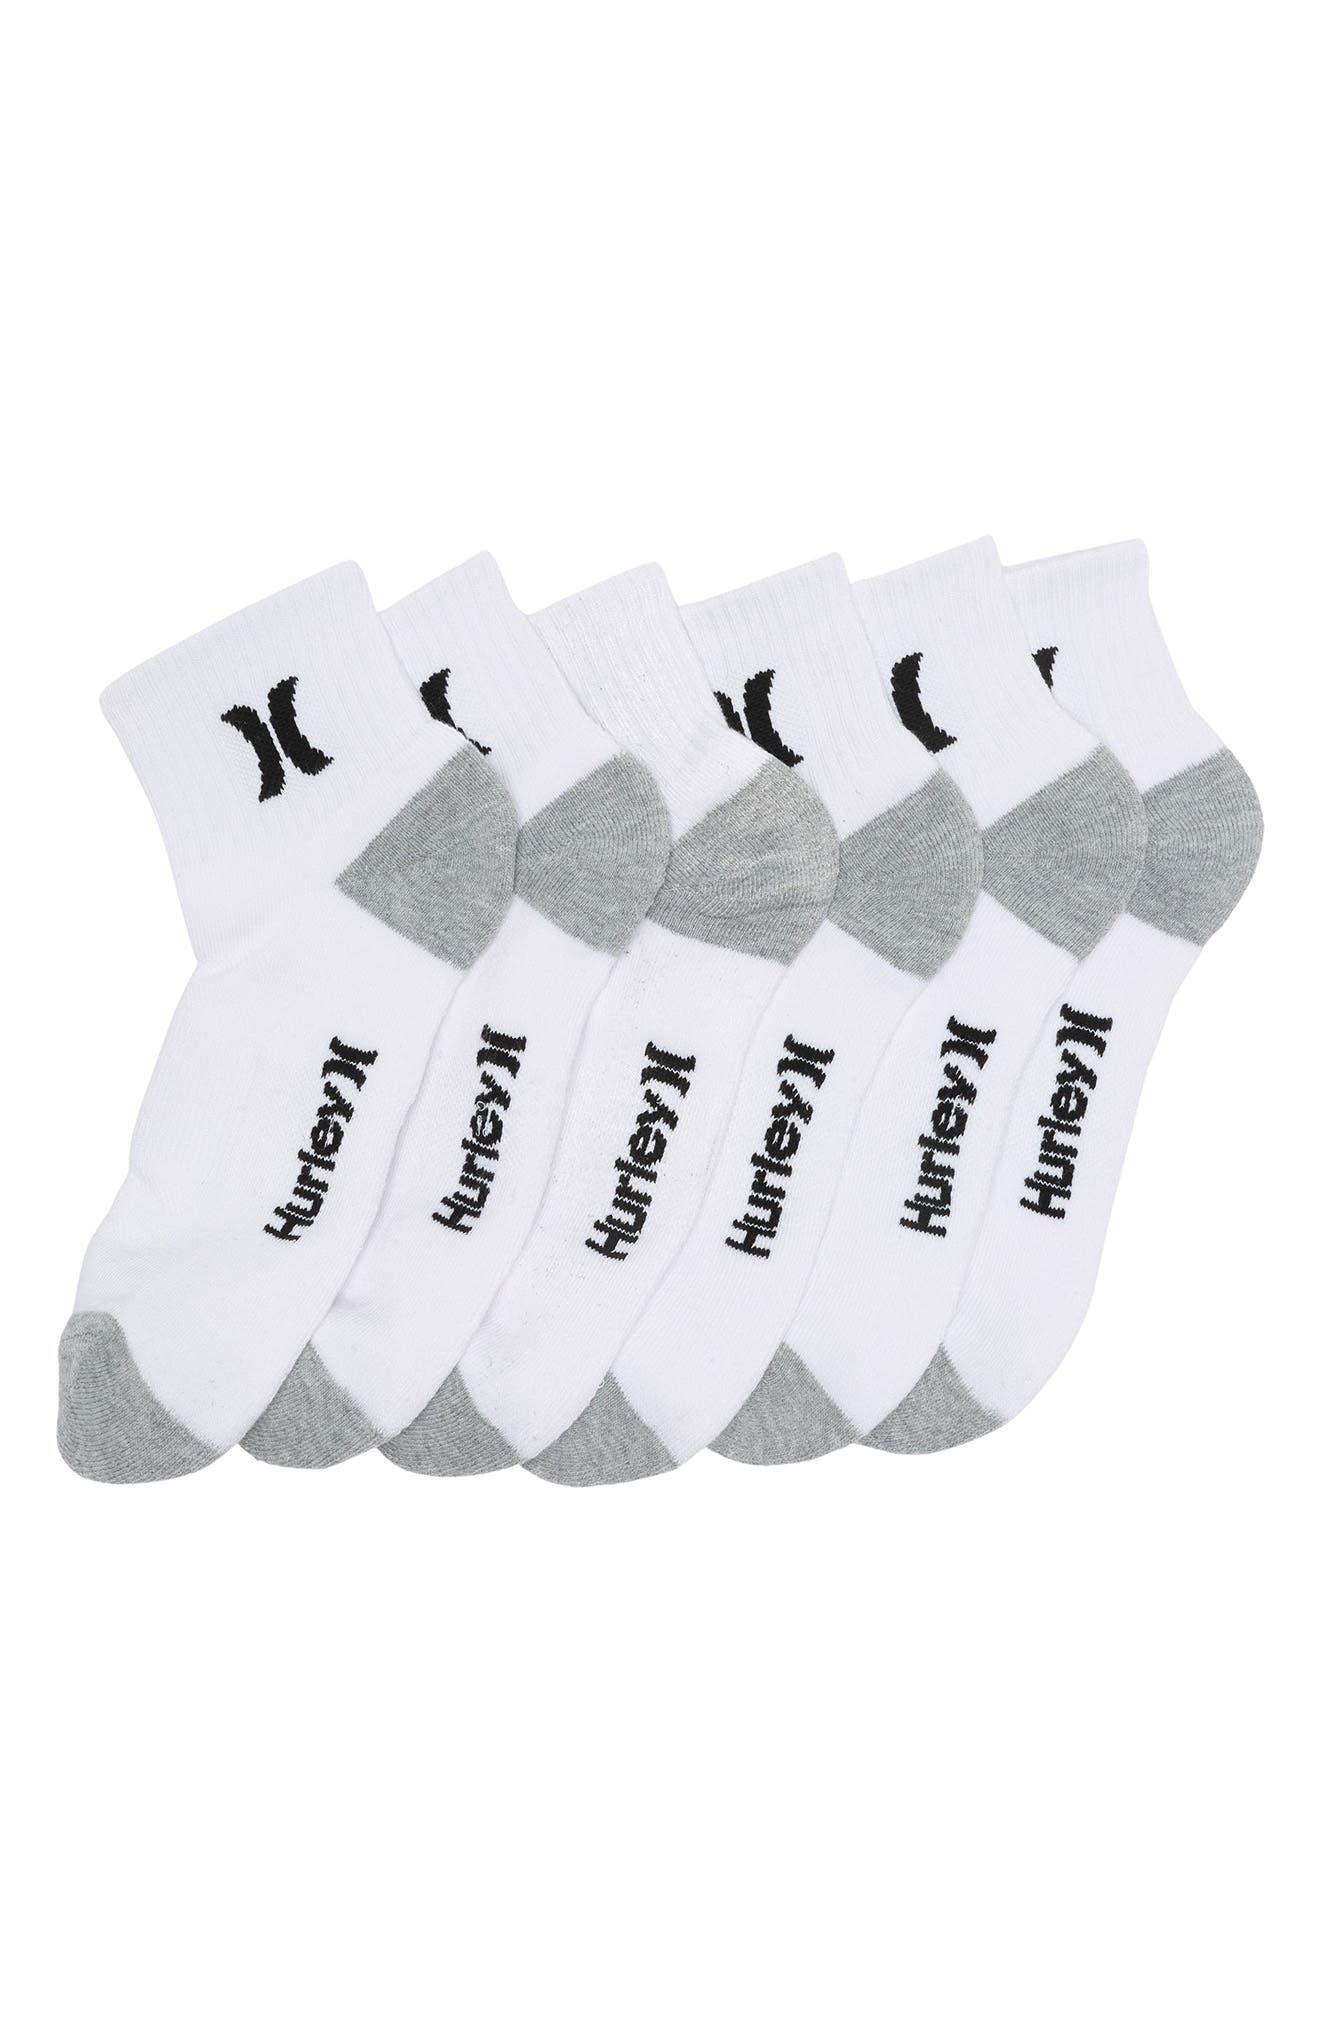 Hurley Terry Quarter Crew Socks In White/black